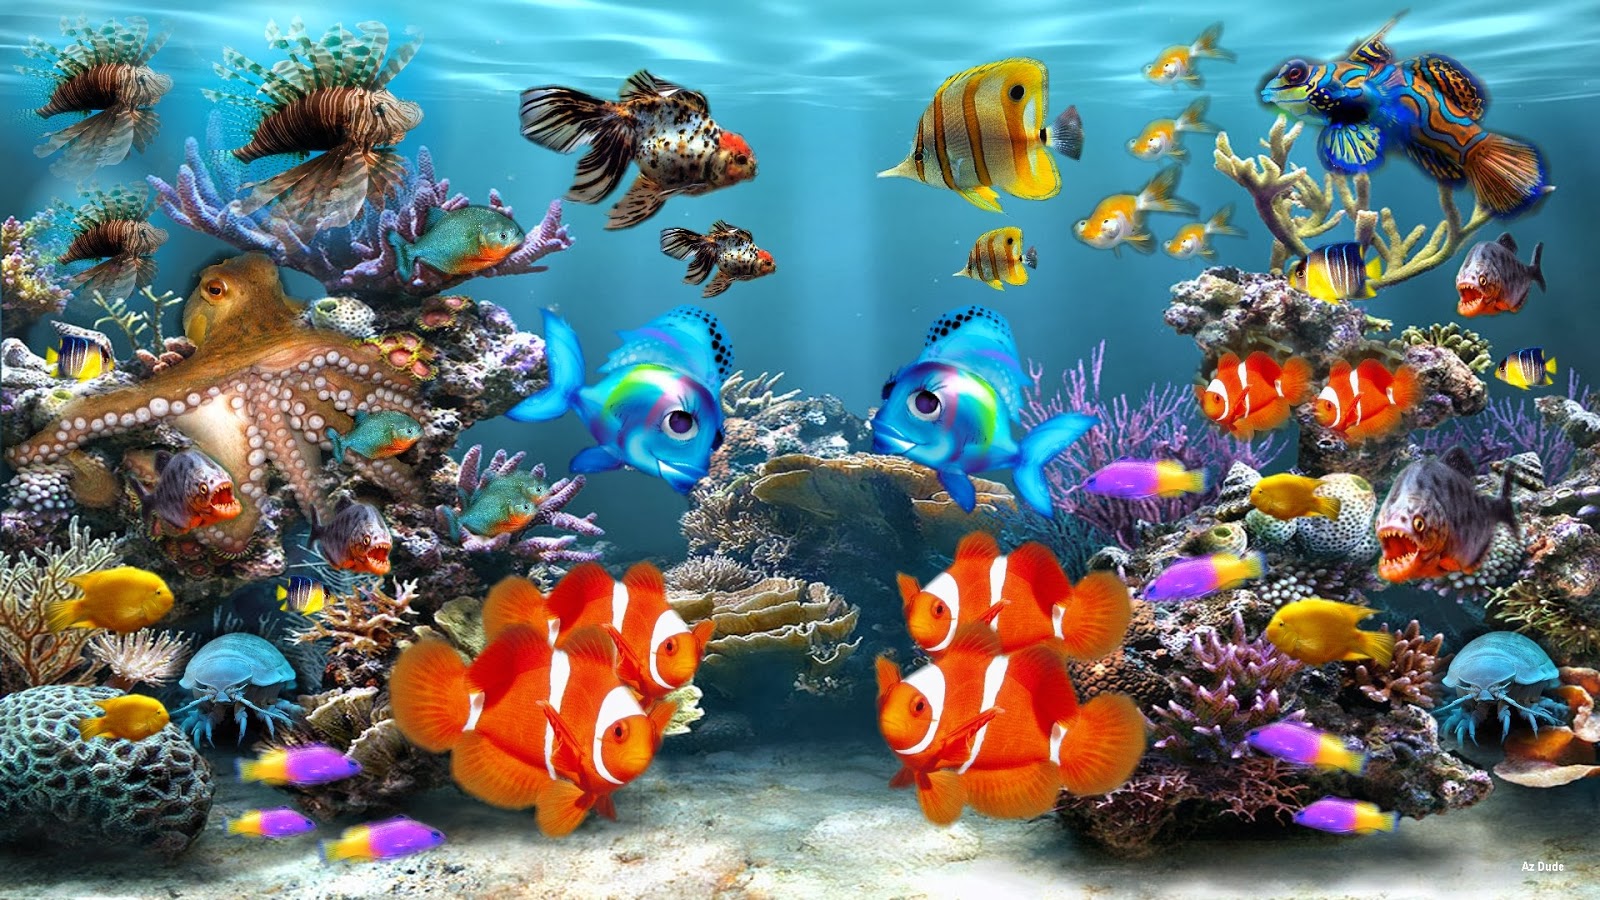 acquario wallpaper hd,biologia marina,pesci di barriera corallina,barriera corallina,pesce,subacqueo